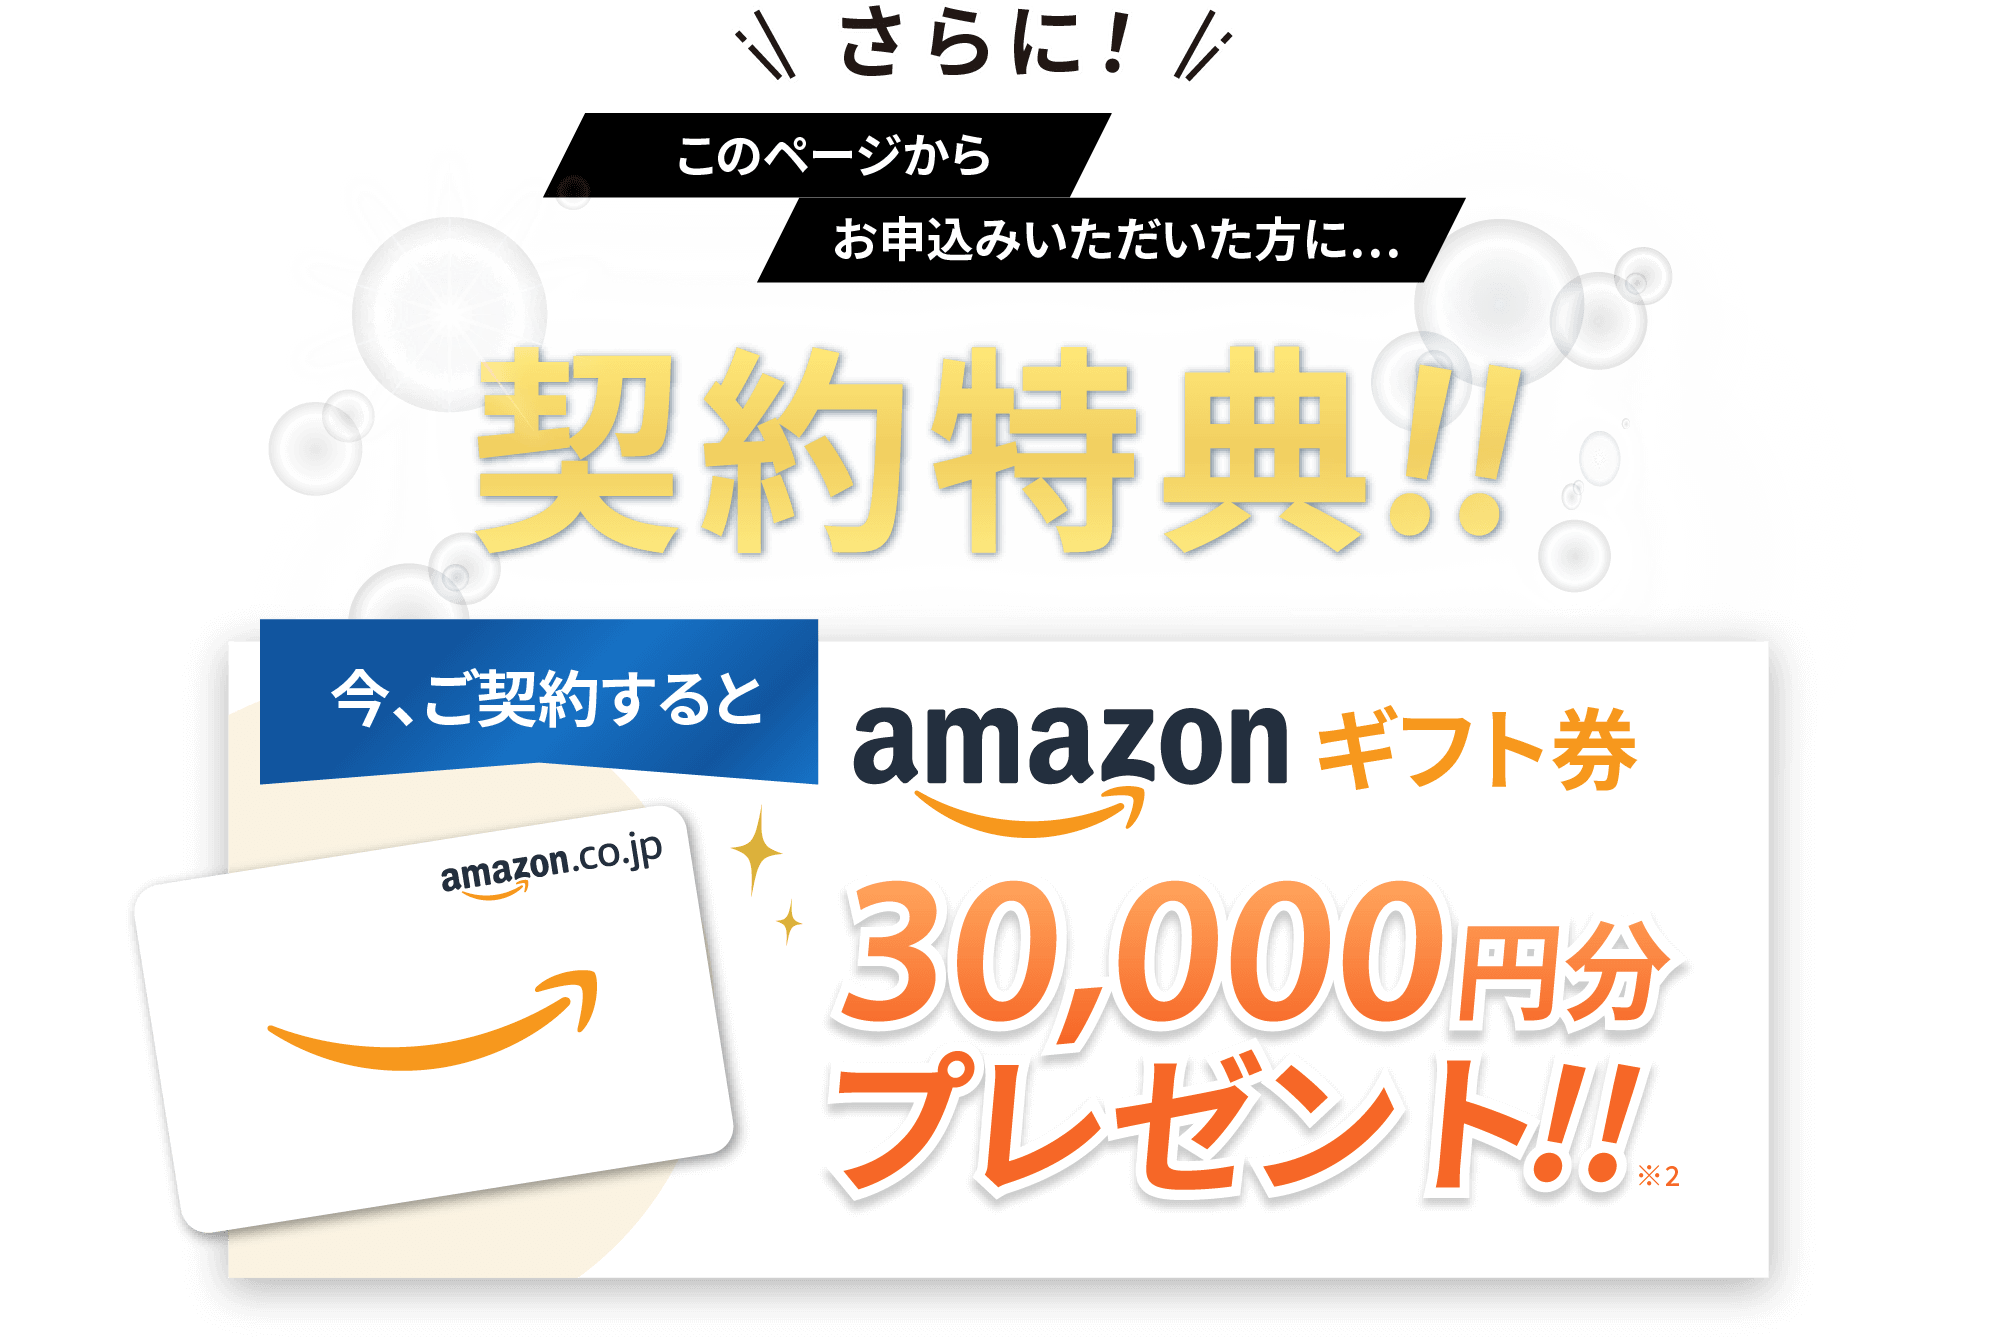 限定特典!!今、ご契約するとAmazonギフト券30,000円分プレゼント!!